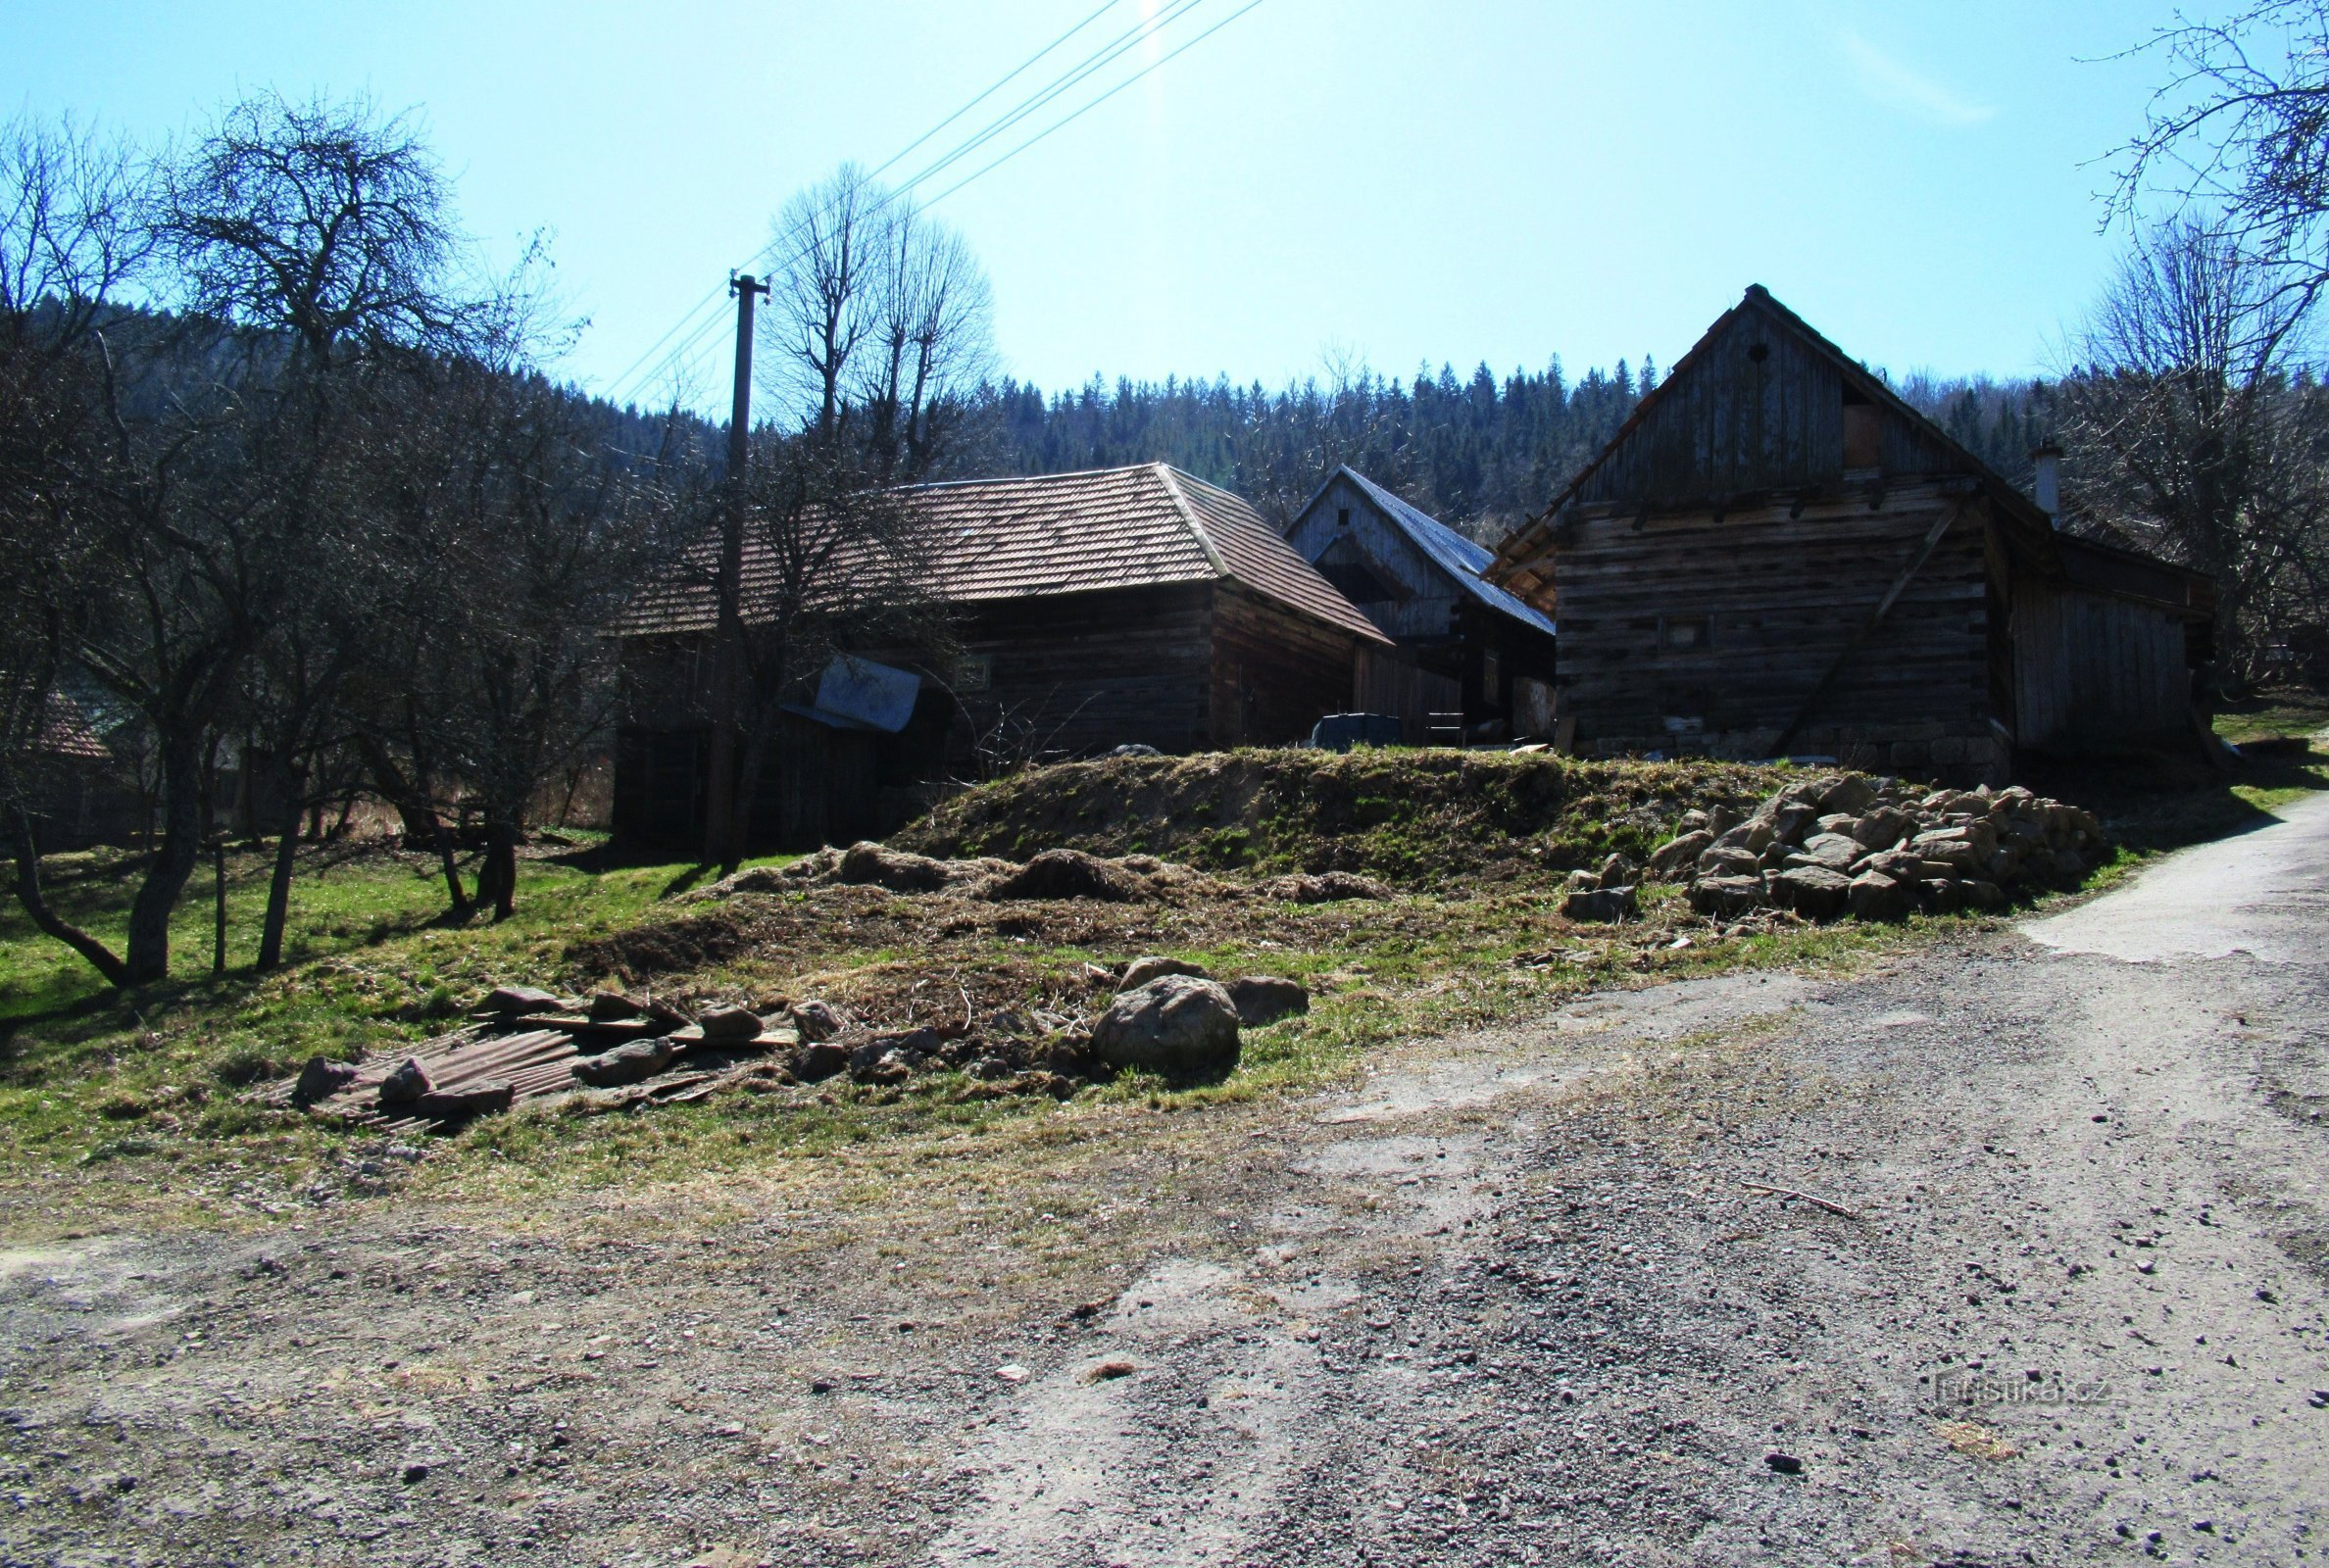 Хайдовы пасеки - самые большие в деревне Здехов в Валахии.